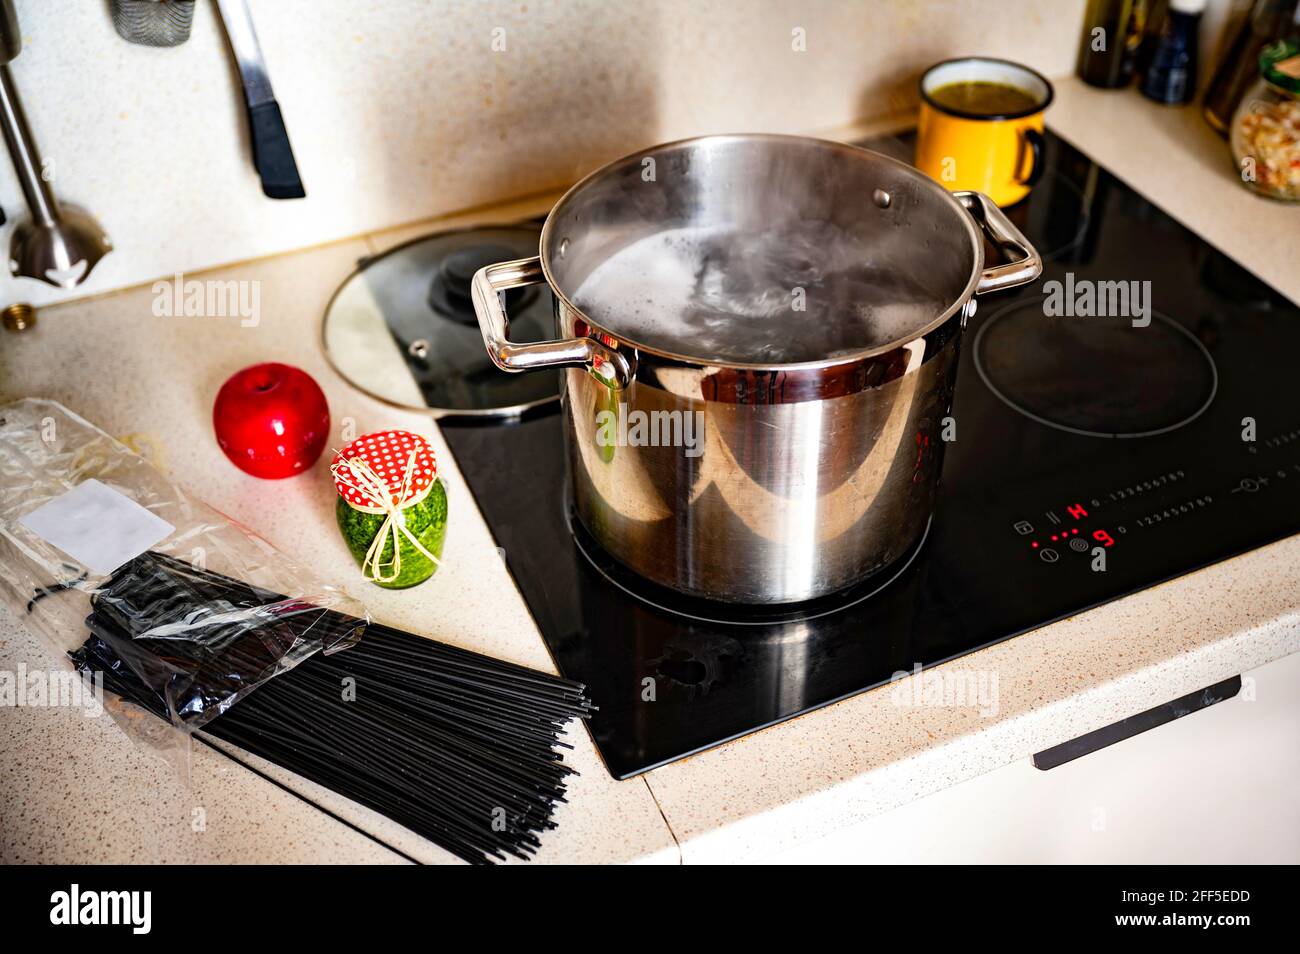 Kochendes Wasser im Topf auf heissem Keramikkochfeld, Beutel mit schwarzen Spaghetti, Flasche mit grünem Basilikum-Pesto, Küchenuhr für roten Apfel, kleiner gelber Topf mit Suppe. Stockfoto